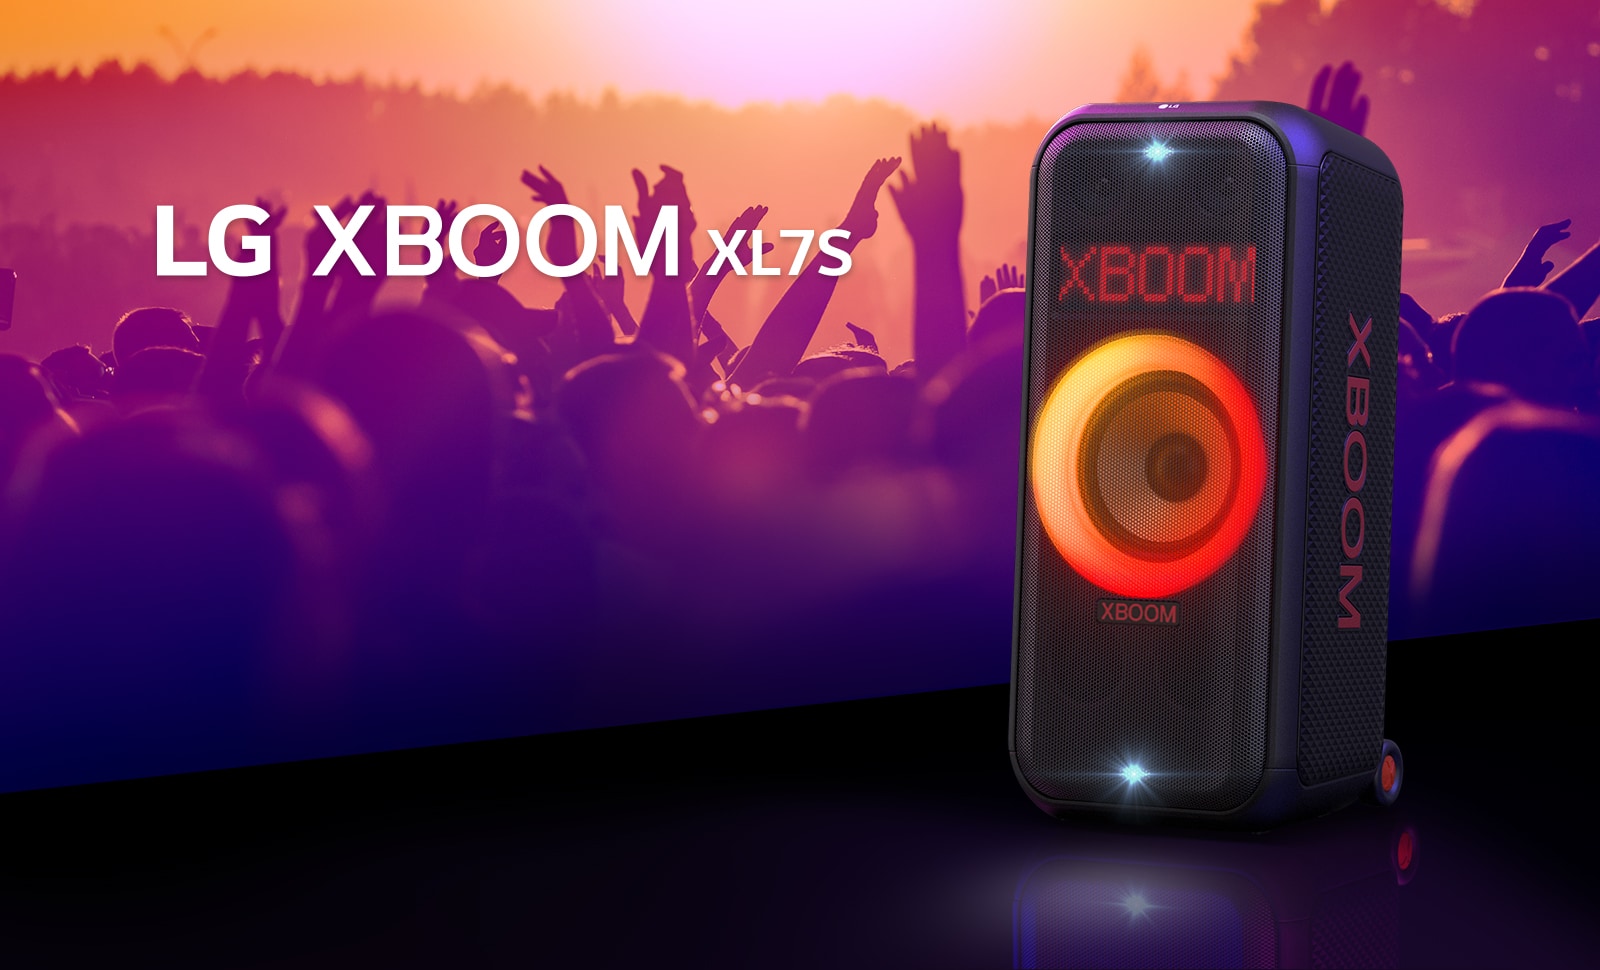 Το LG XBOOM XL7S είναι τοποθετημένο στη σκηνή με κόκκινο-πορτοκαλί διαβαθμισμένο φωτισμό. Πίσω από τη σκηνή, ο κόσμος απολαμβάνει τη μουσική.